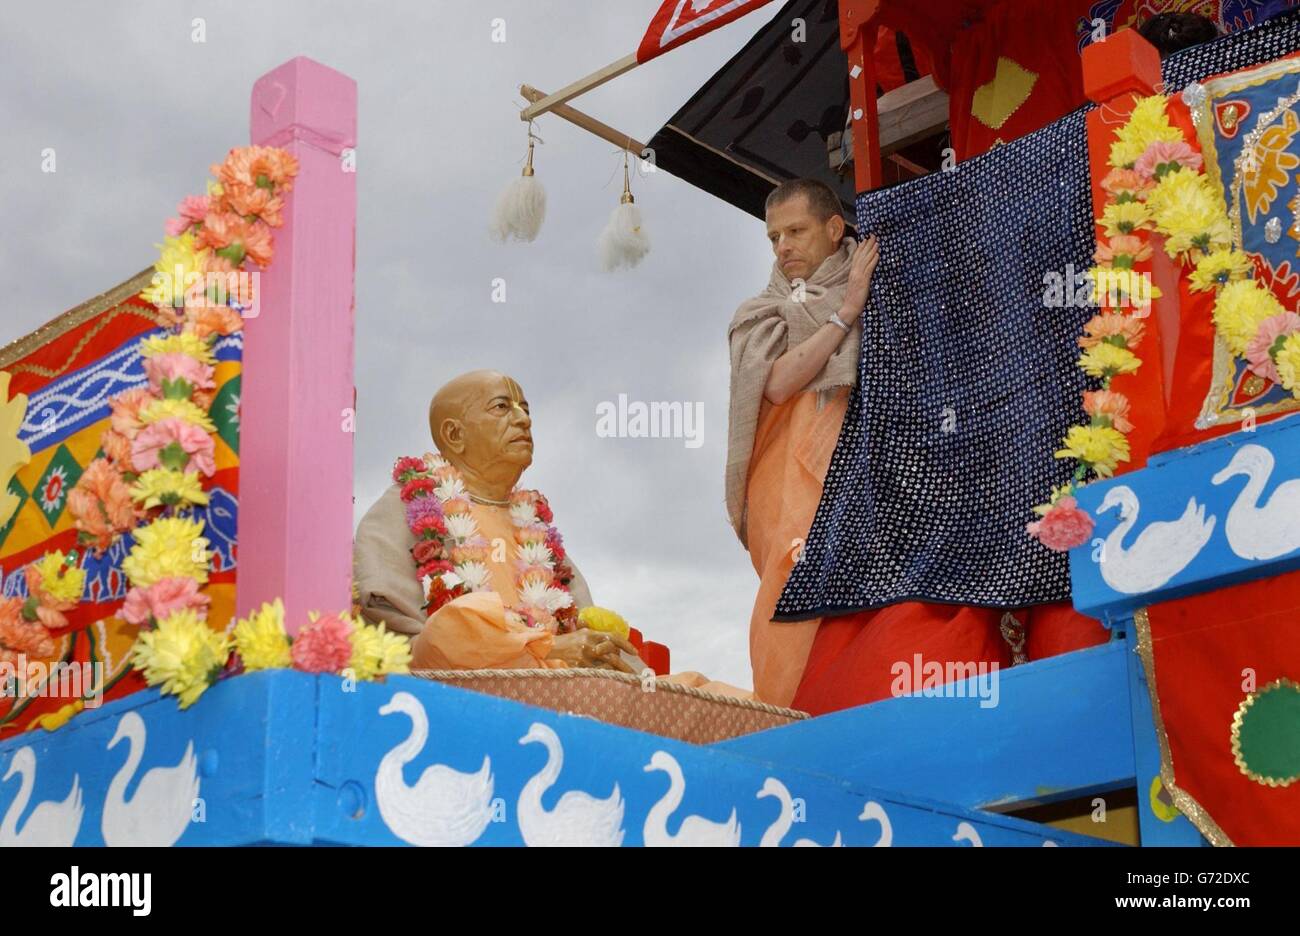 Un dévot Krishna regarde une sculpture sacrée du fondateur du mouvement religieux porté sur un char dédié à Lady Subhadra qui participe au Carnaval de Ratha-yathra dans le centre de Londres. C'est la première fois que le groupe a la permission de faire passer plus d'un char dans les rues. Banque D'Images